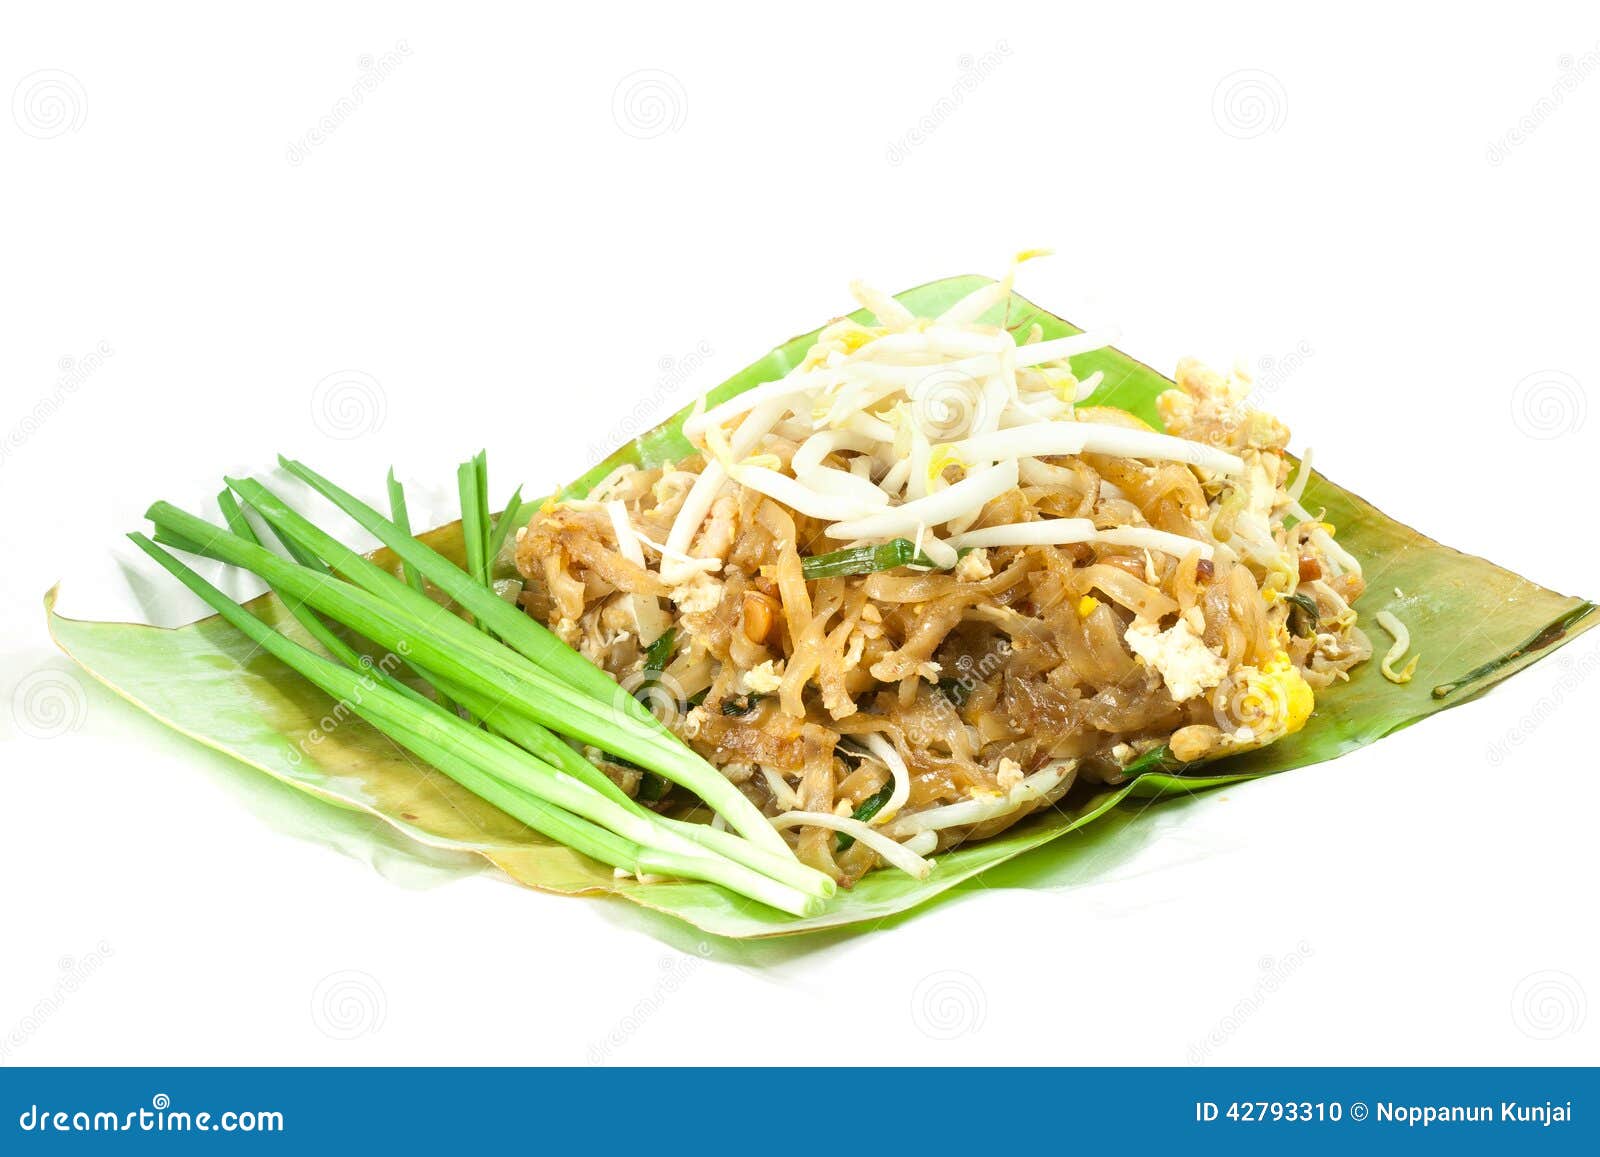 padthai is thai food